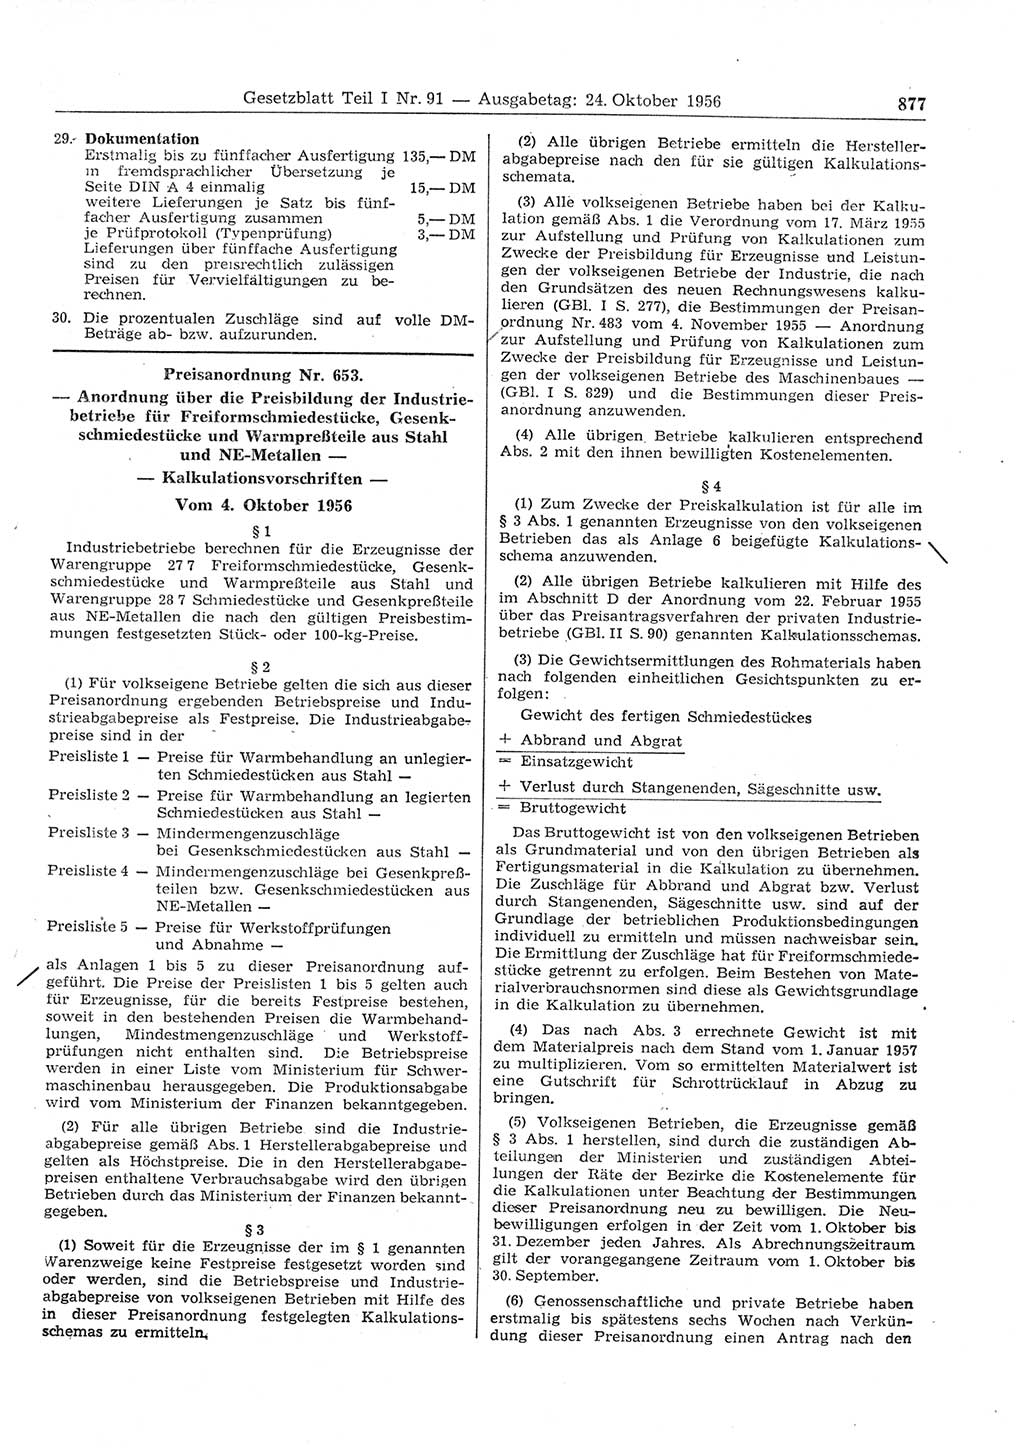 Gesetzblatt (GBl.) der Deutschen Demokratischen Republik (DDR) Teil Ⅰ 1956, Seite 877 (GBl. DDR Ⅰ 1956, S. 877)